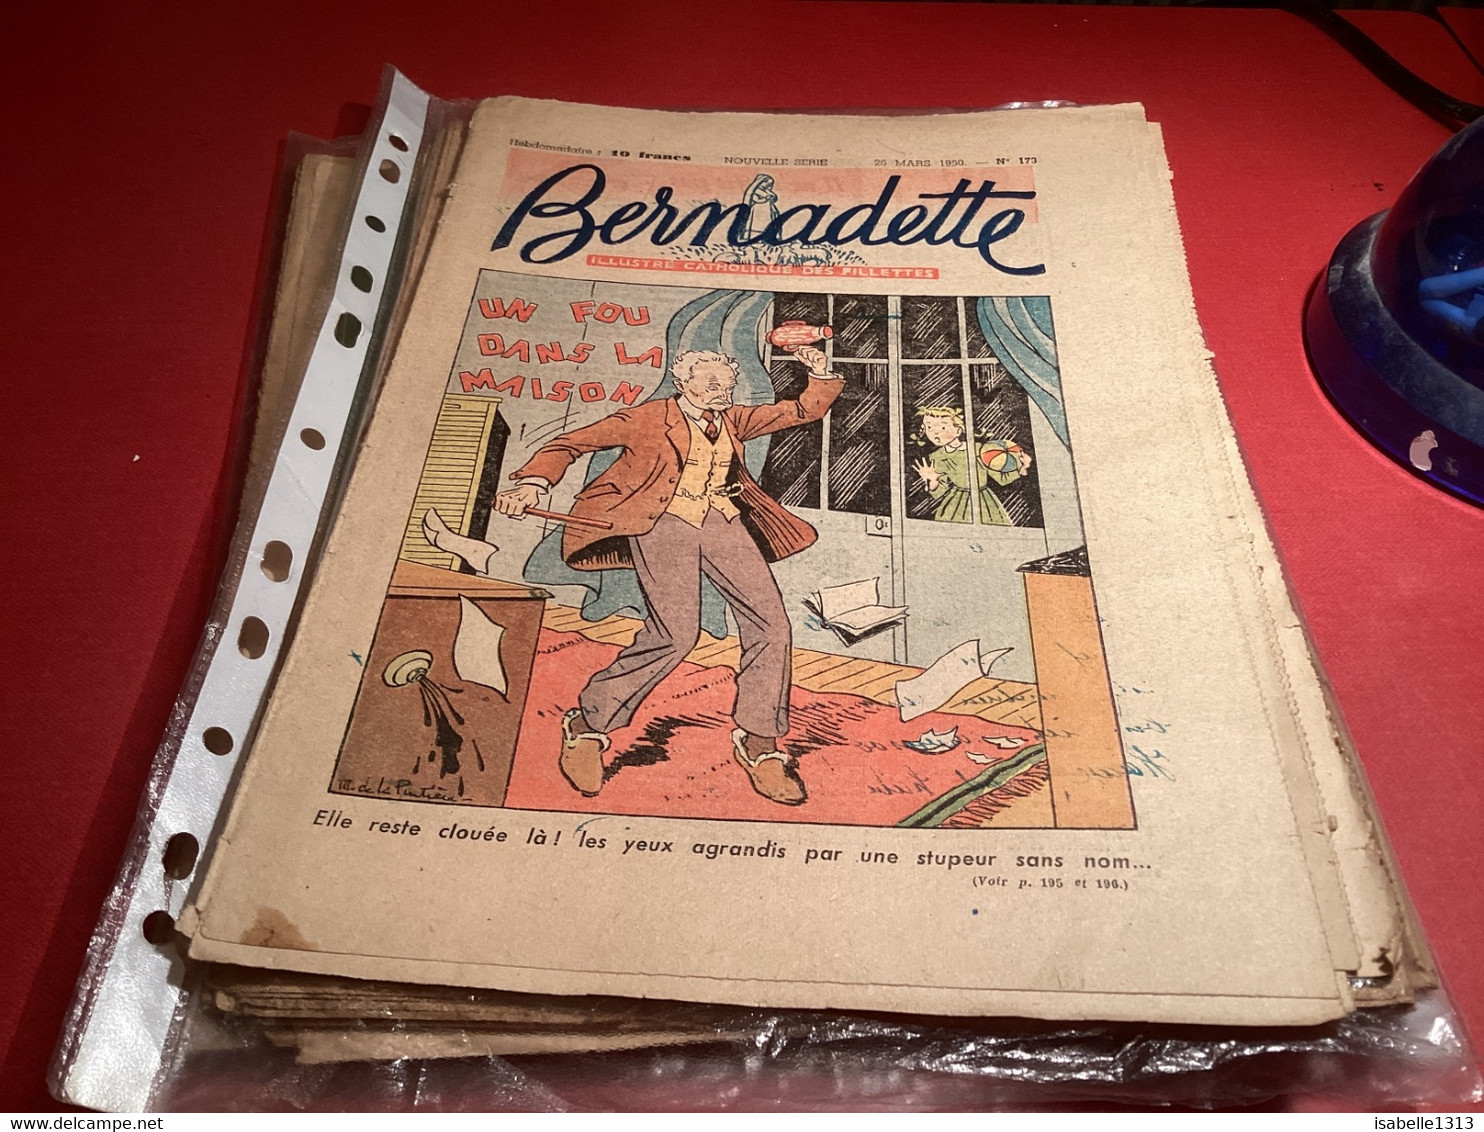 Bernadette Revue Hebdomadaire Illustrée Rare 1950 Numéro 173 Un Fou Dans La Maison - Bernadette